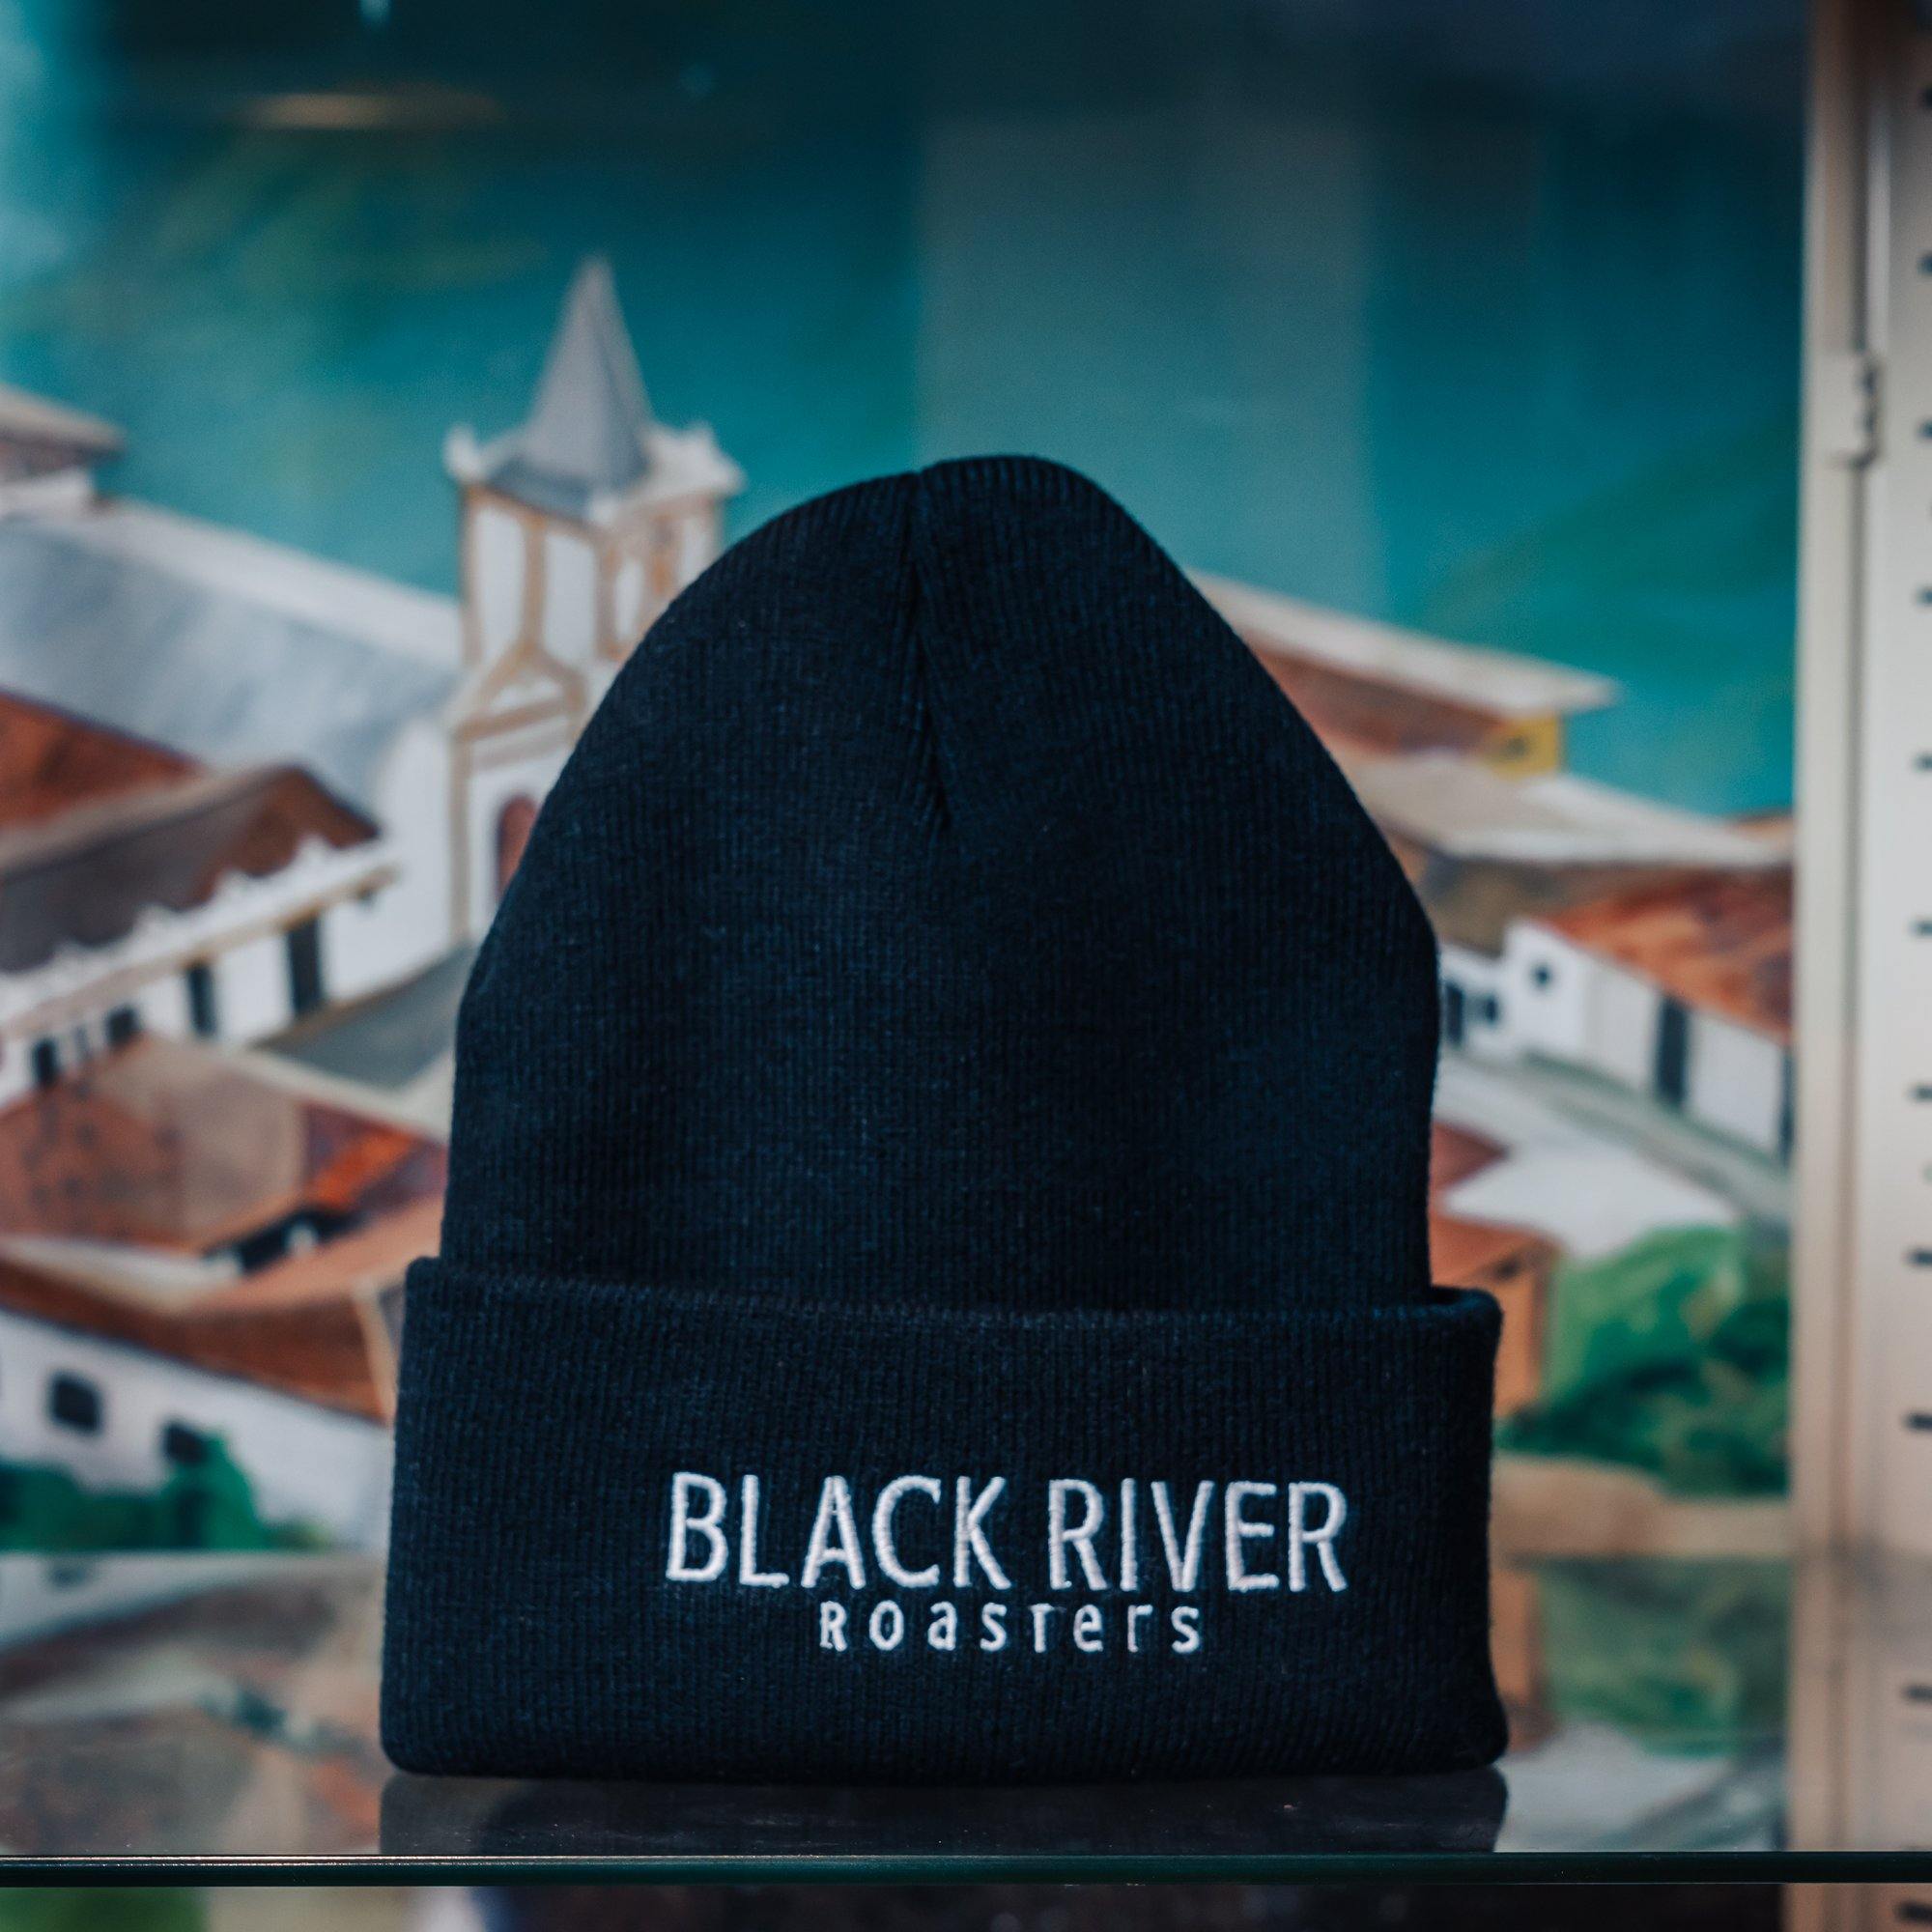 Black River Roasters Black Beanie - Black River Roasters